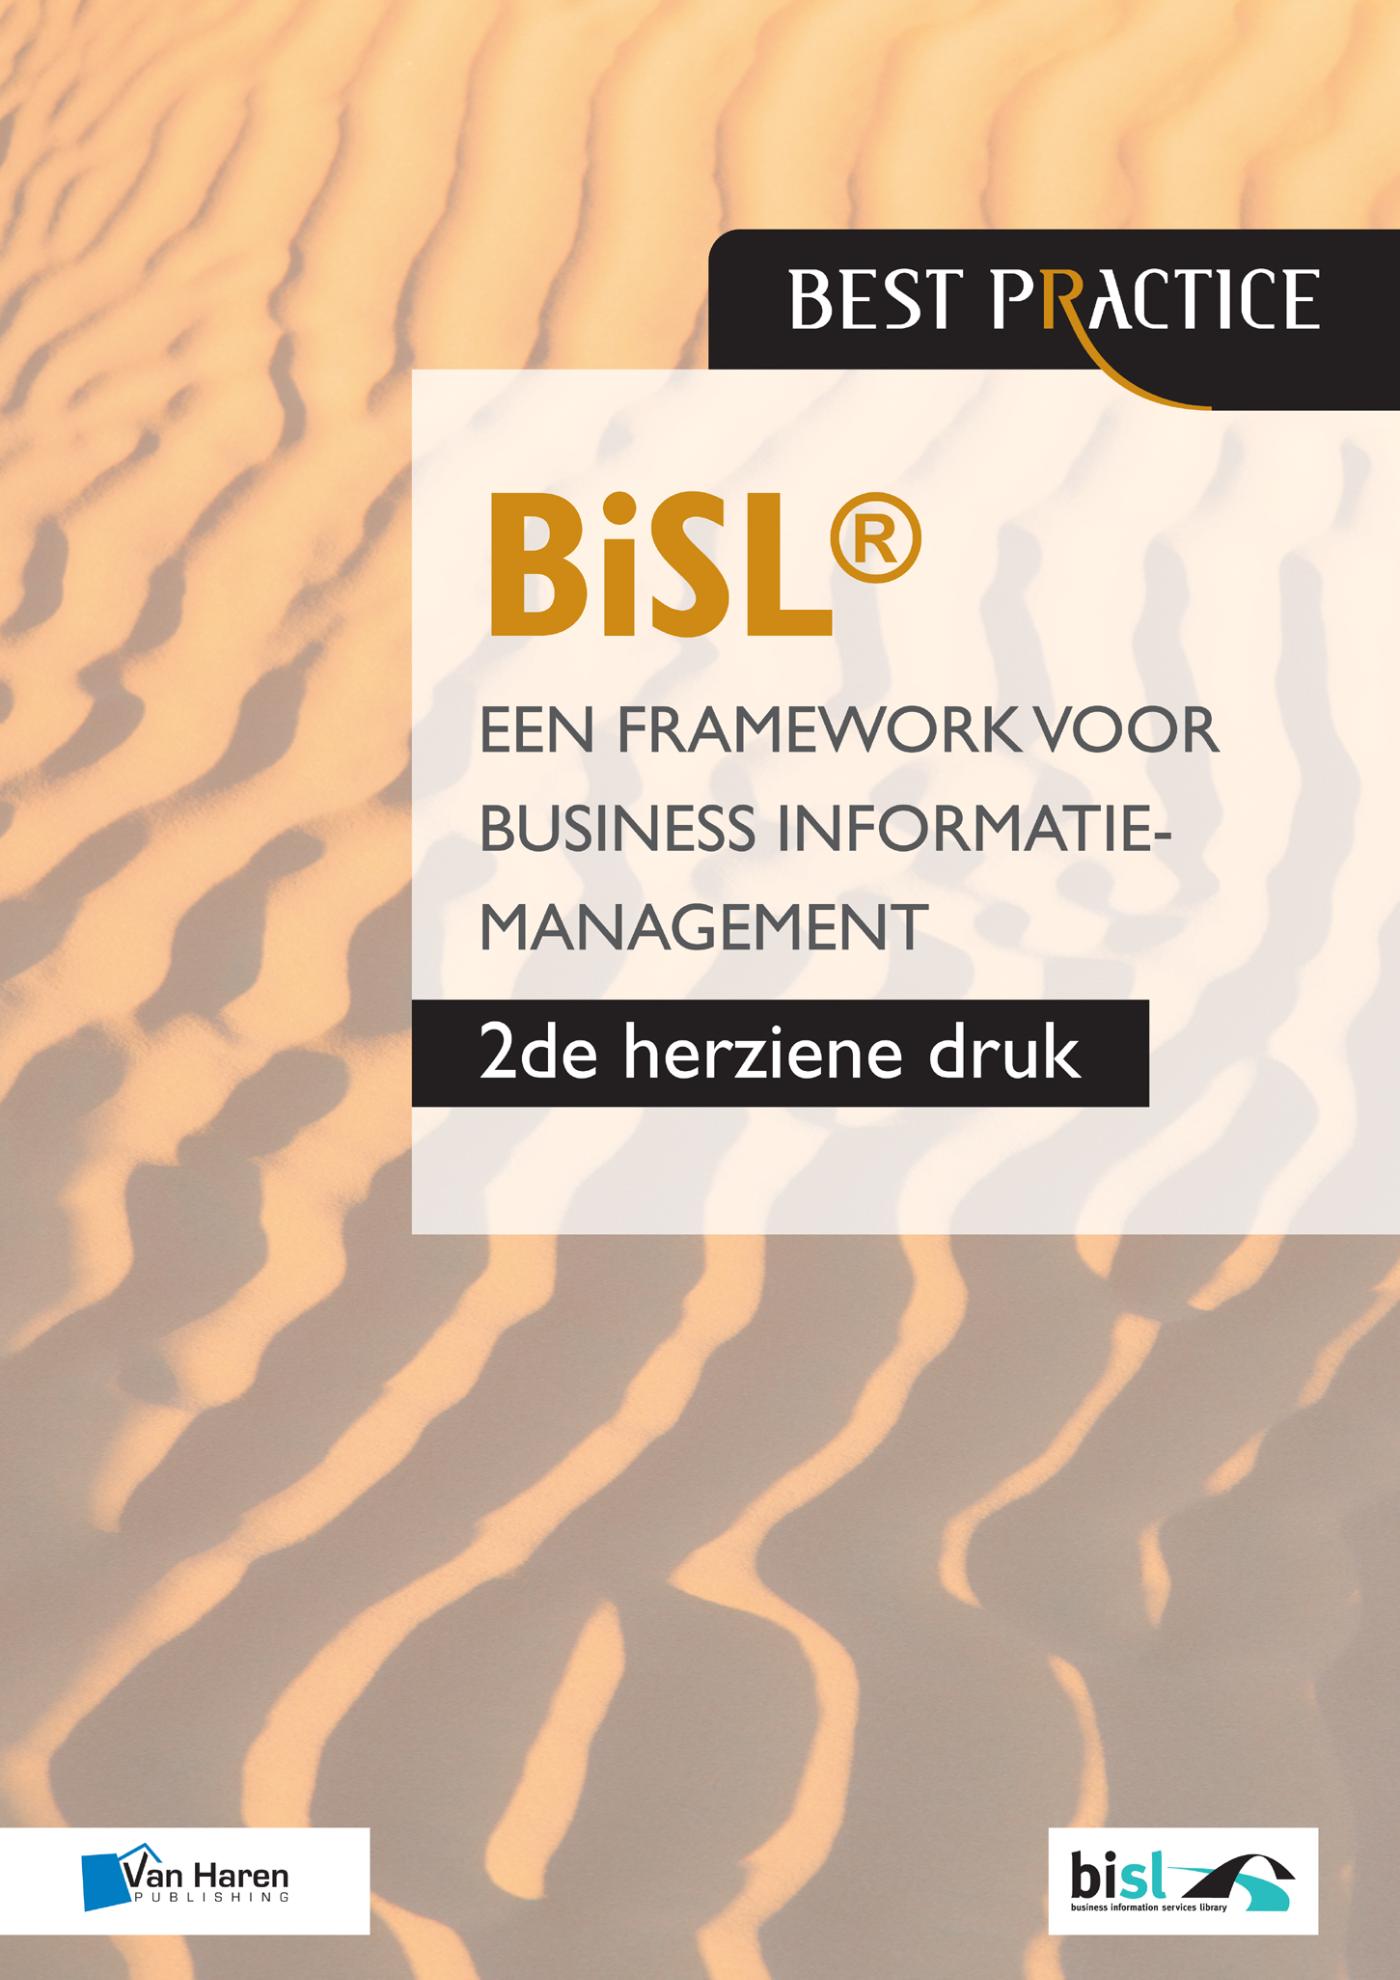 BiSL - Een framework voor business informatiemanagement (Ebook)